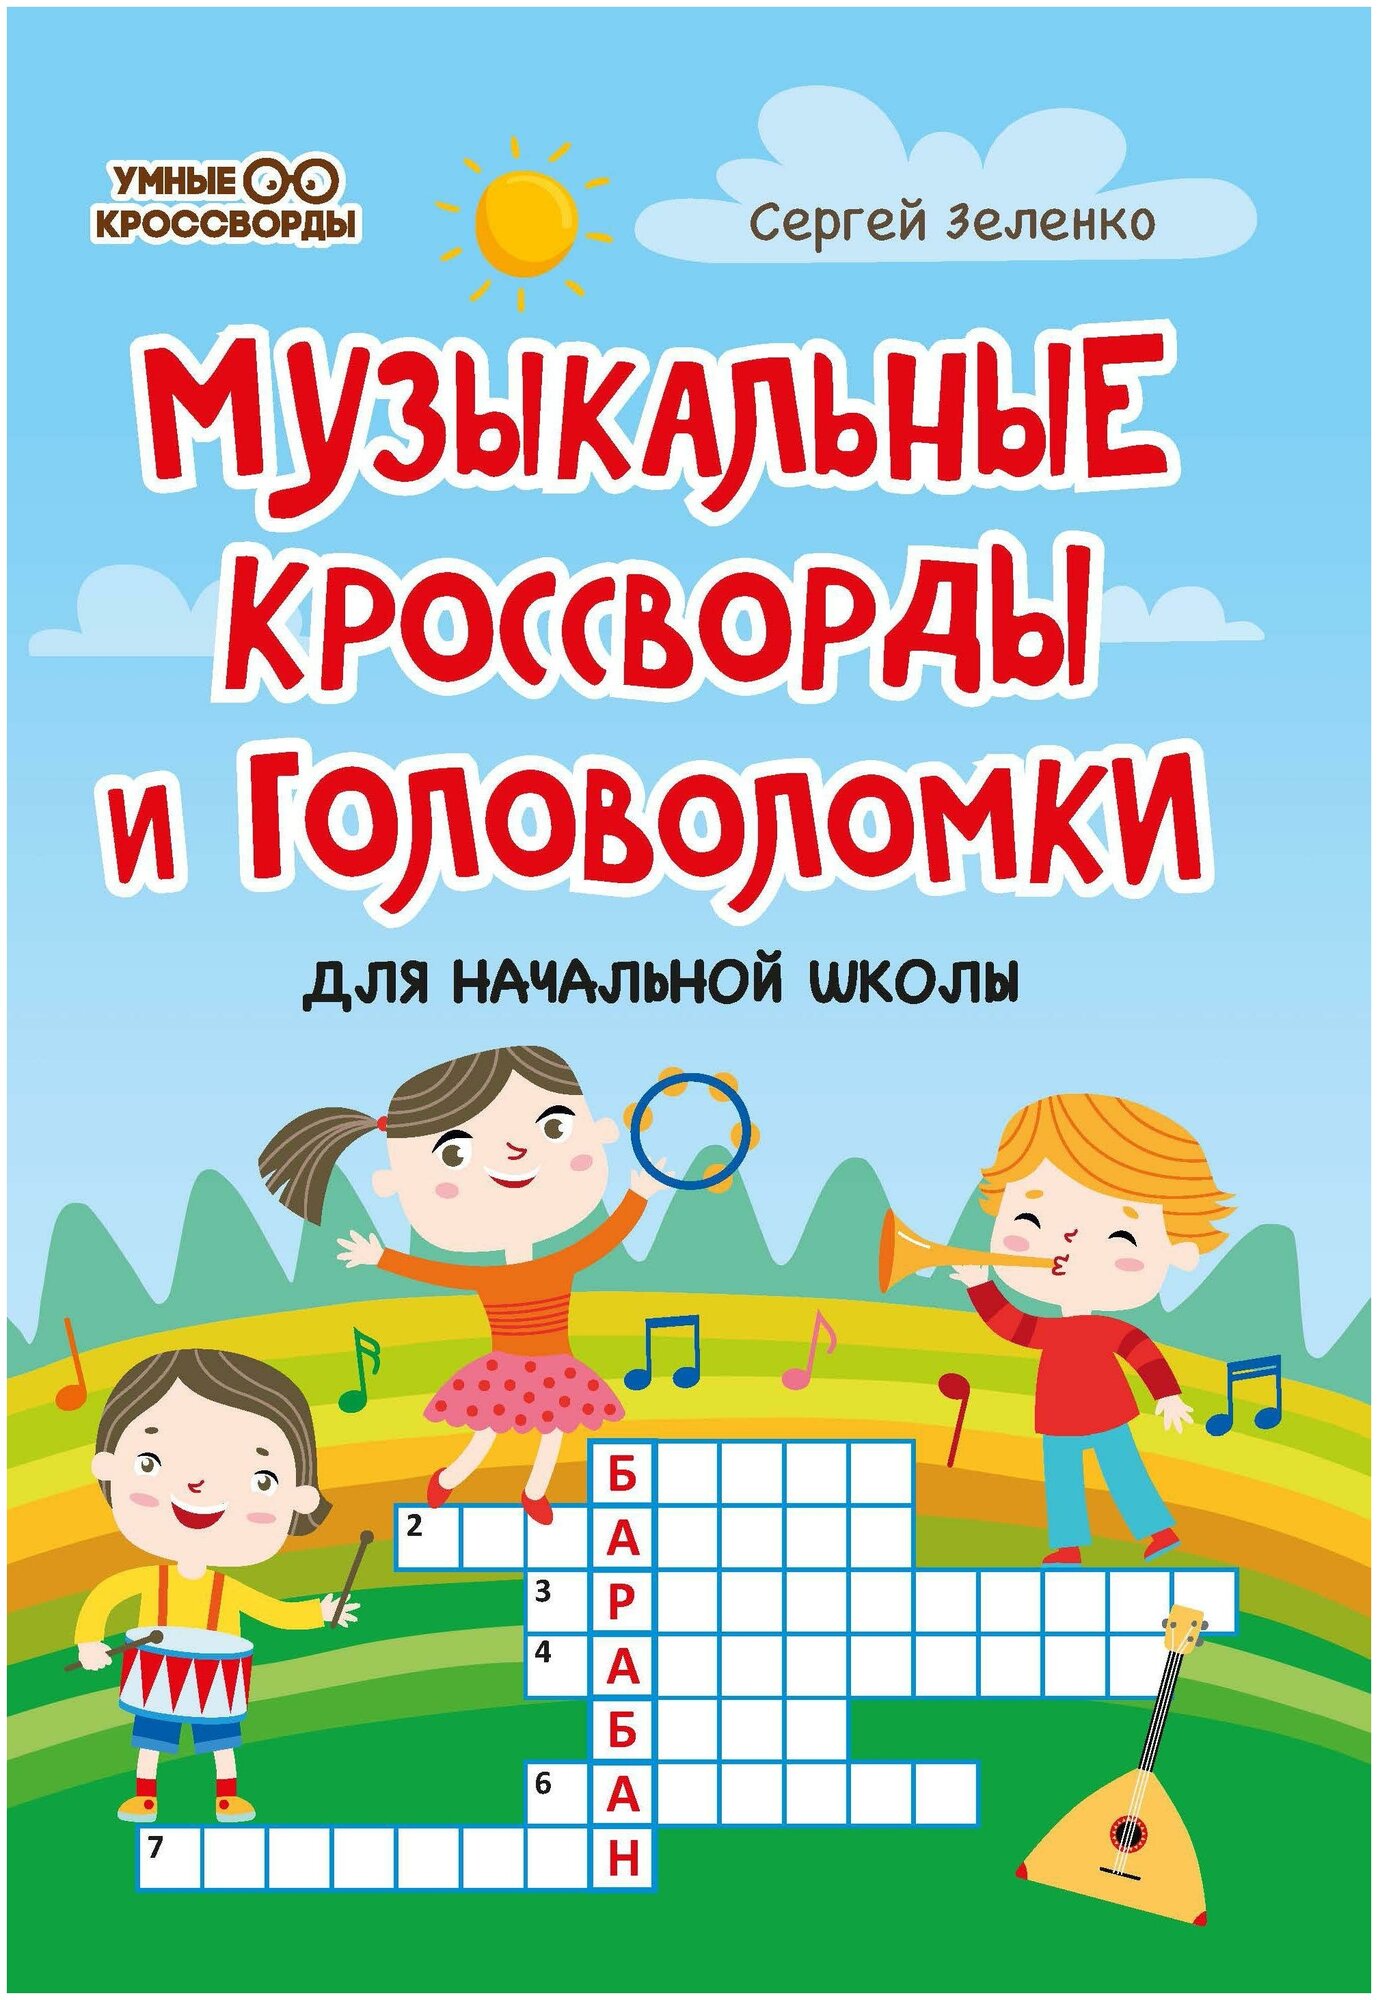 Музыкальные кроссворды и головоломки для начальной школы - фото №2